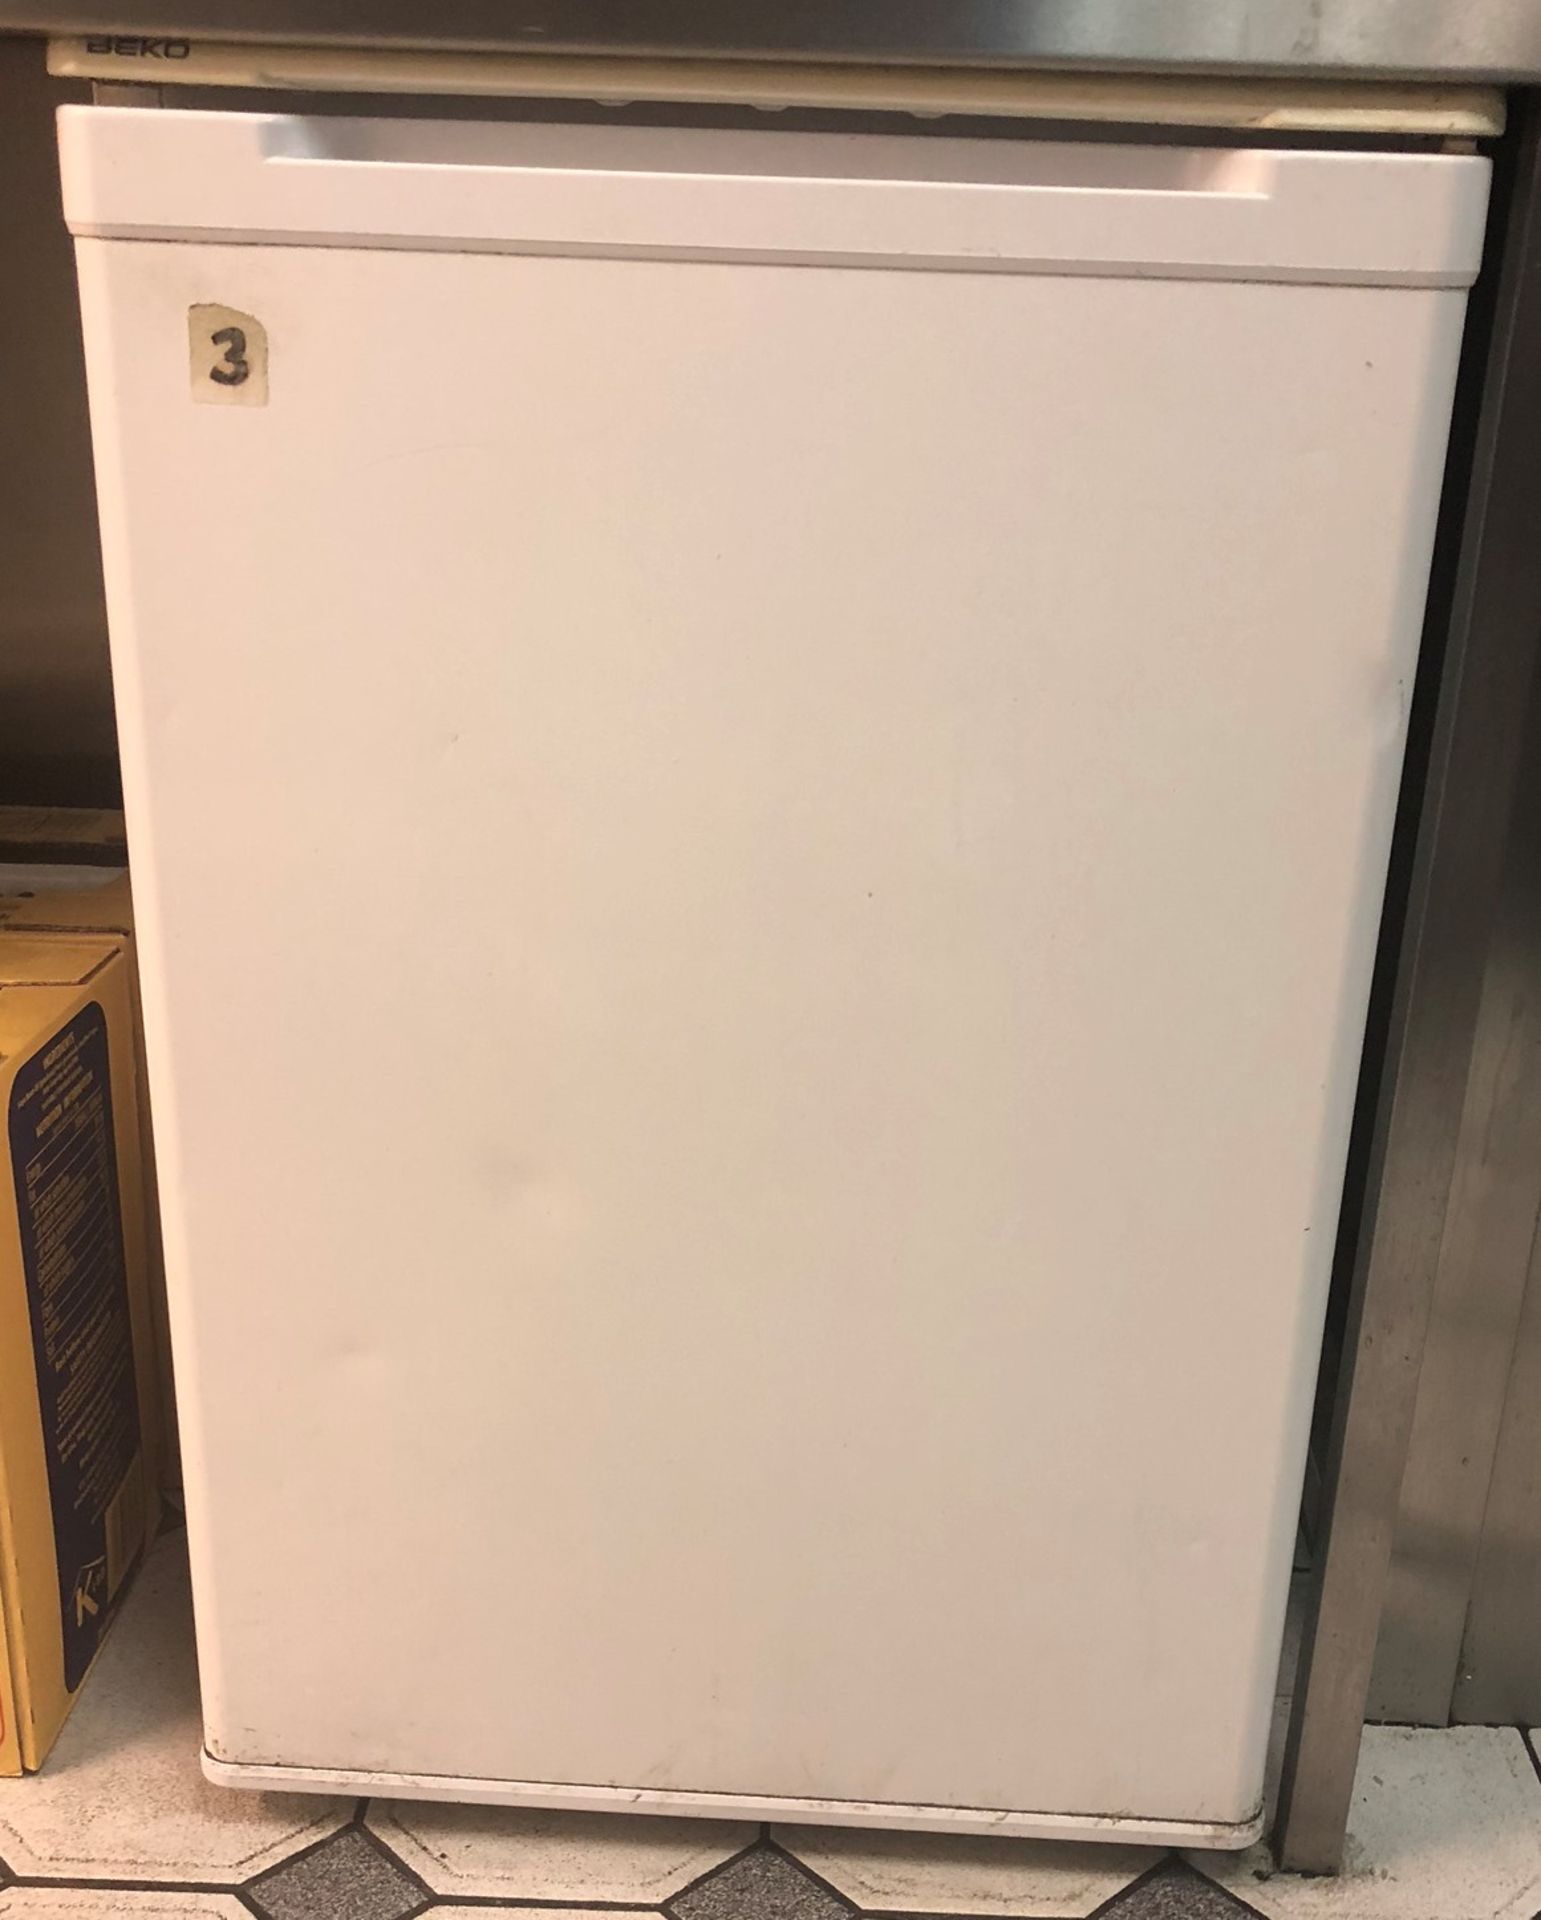 Beko Under-Counter Refrigerator